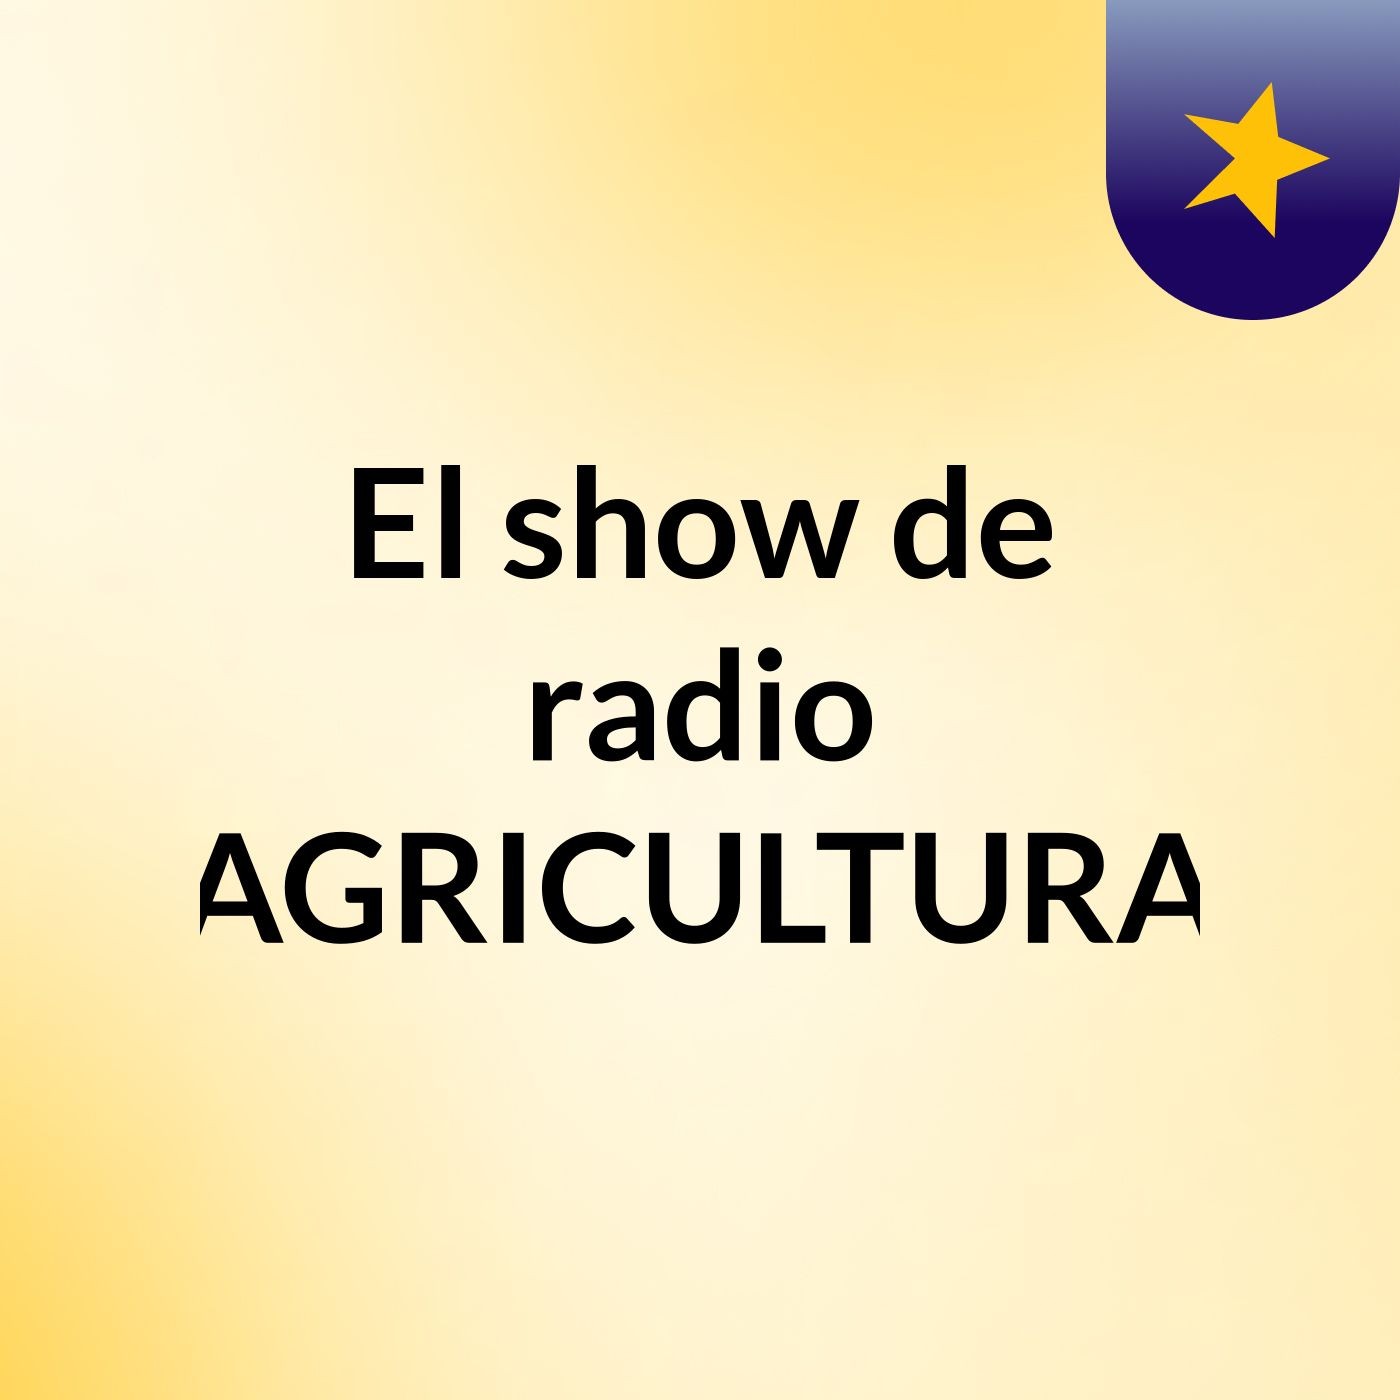 El show de radio AGRICULTURA